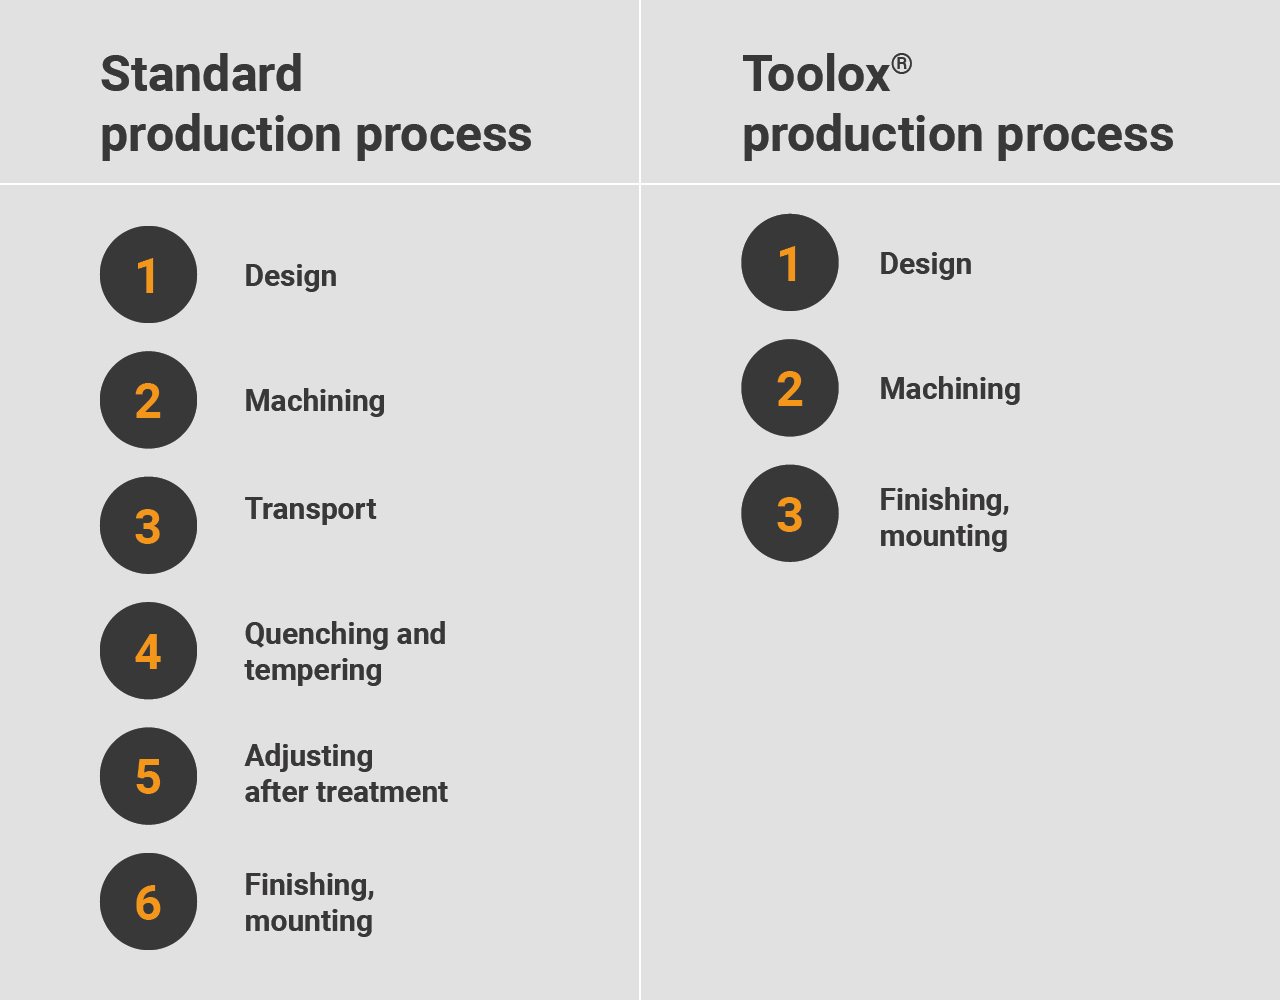 Proceso de producción Toolox frente al estándar